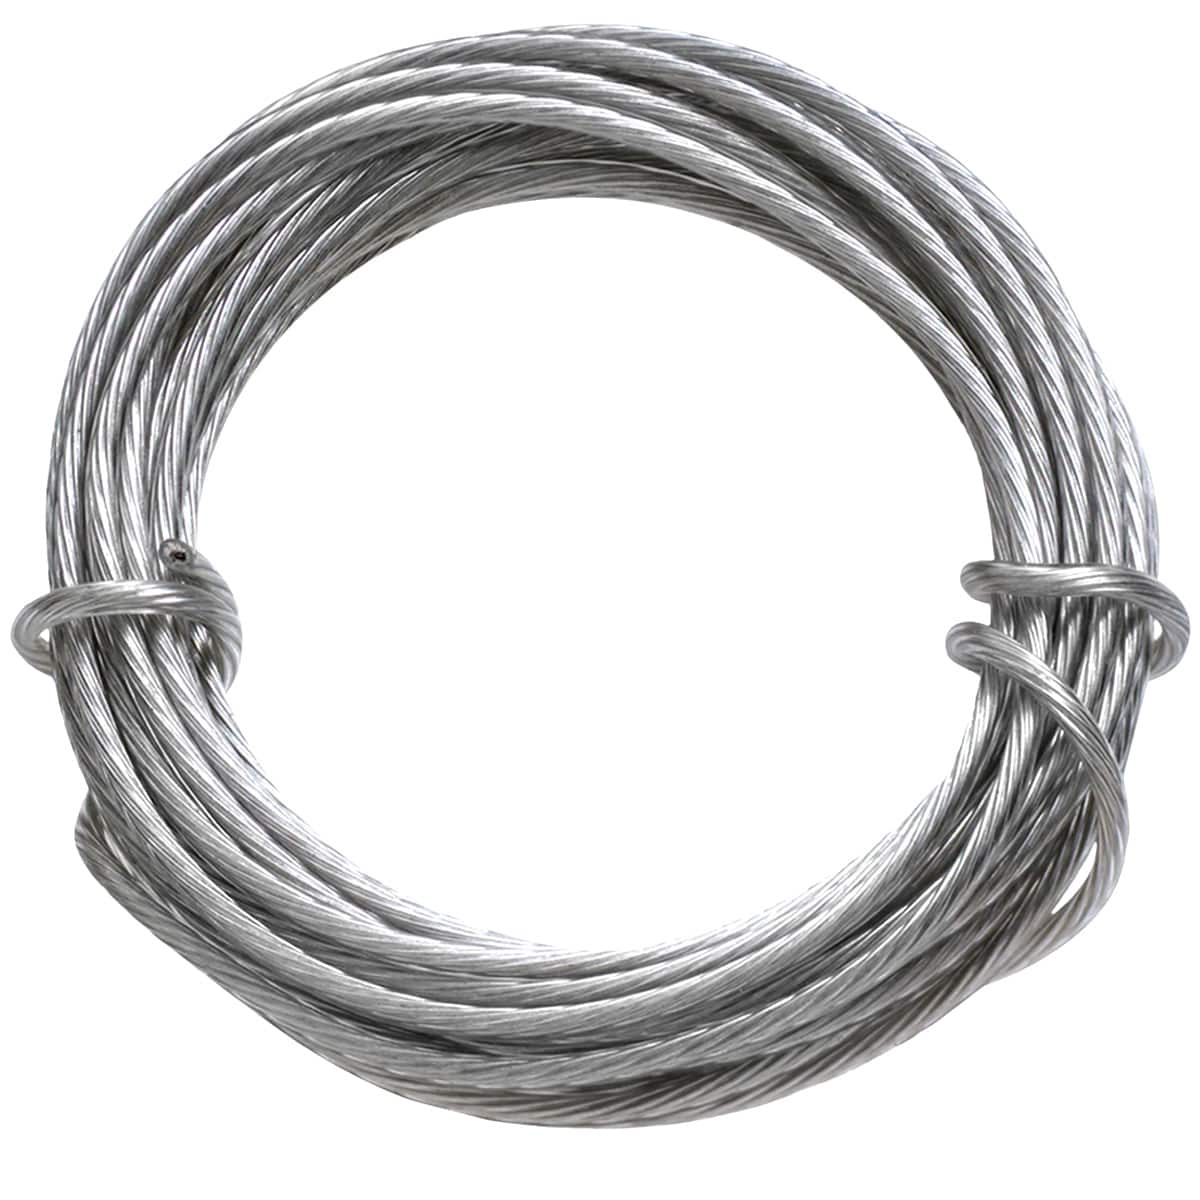 Kitcheniva Metal Ring Sizer Measure Stick Standard Jewelry Tool